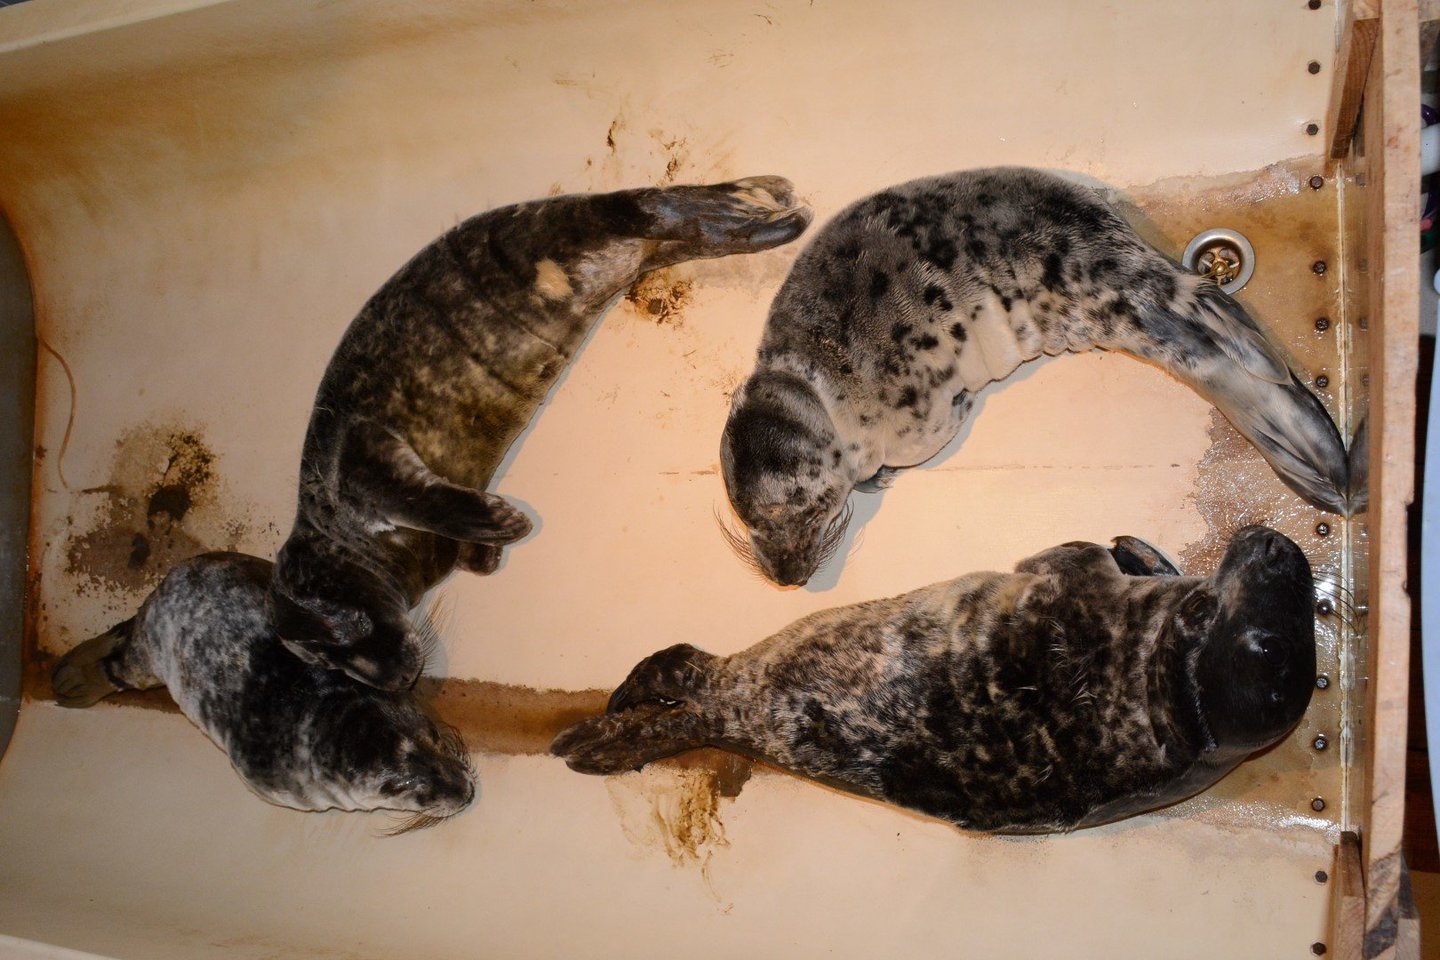  Baltijos jūrą į krantus išmeta ruonių jauniklius, kurie vėliau gydomi Lietuvos jūrų muziejuje.